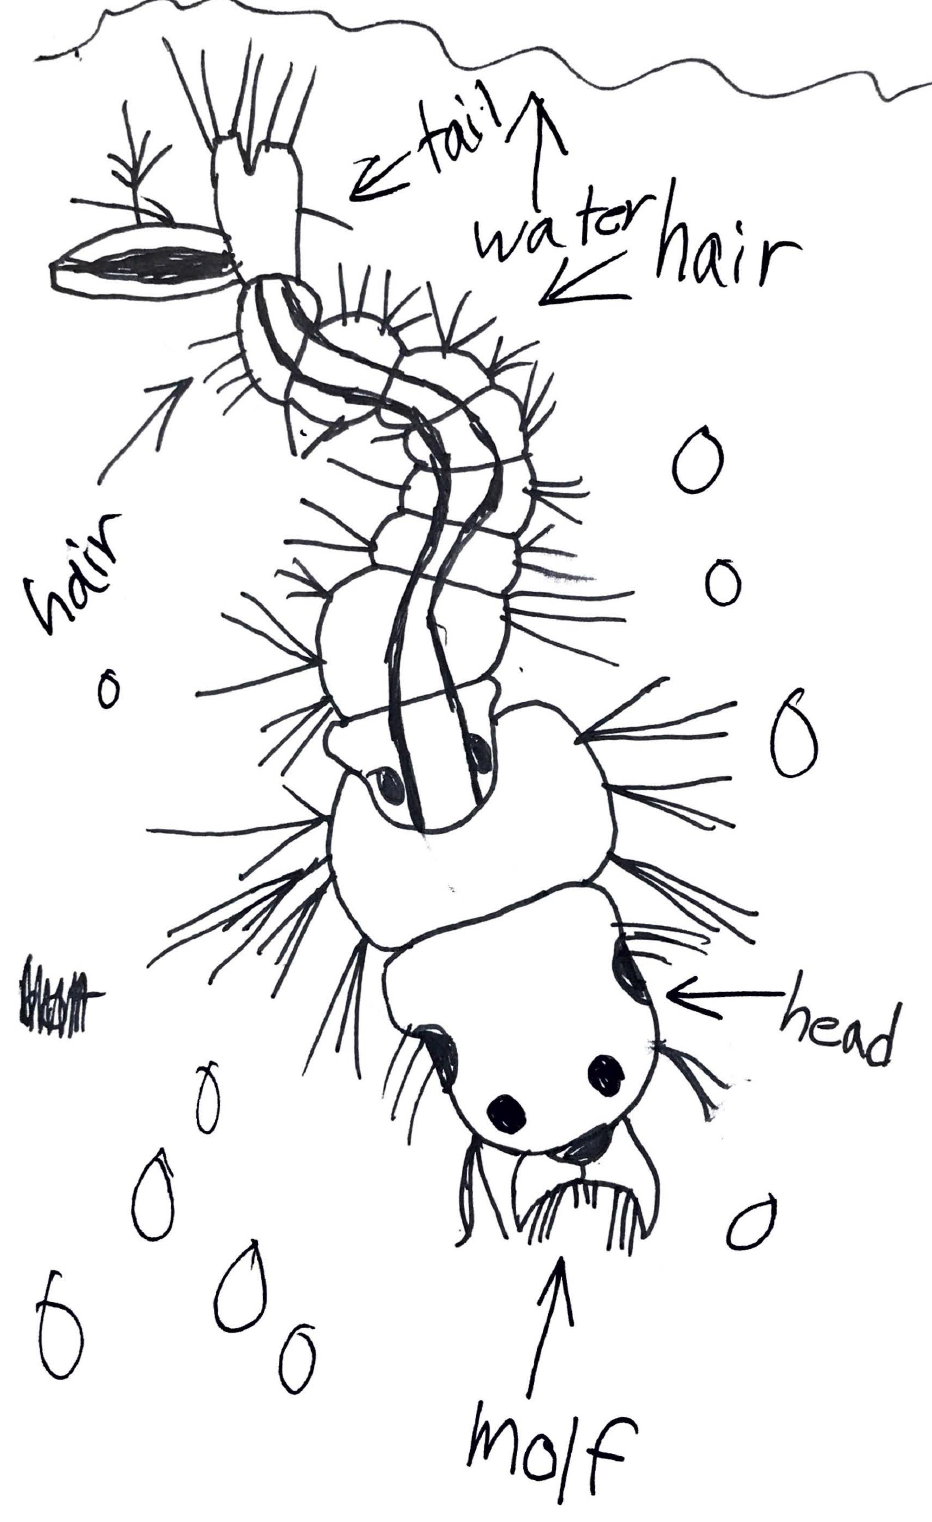 Kid's scientific illustration of a mosquito larvae